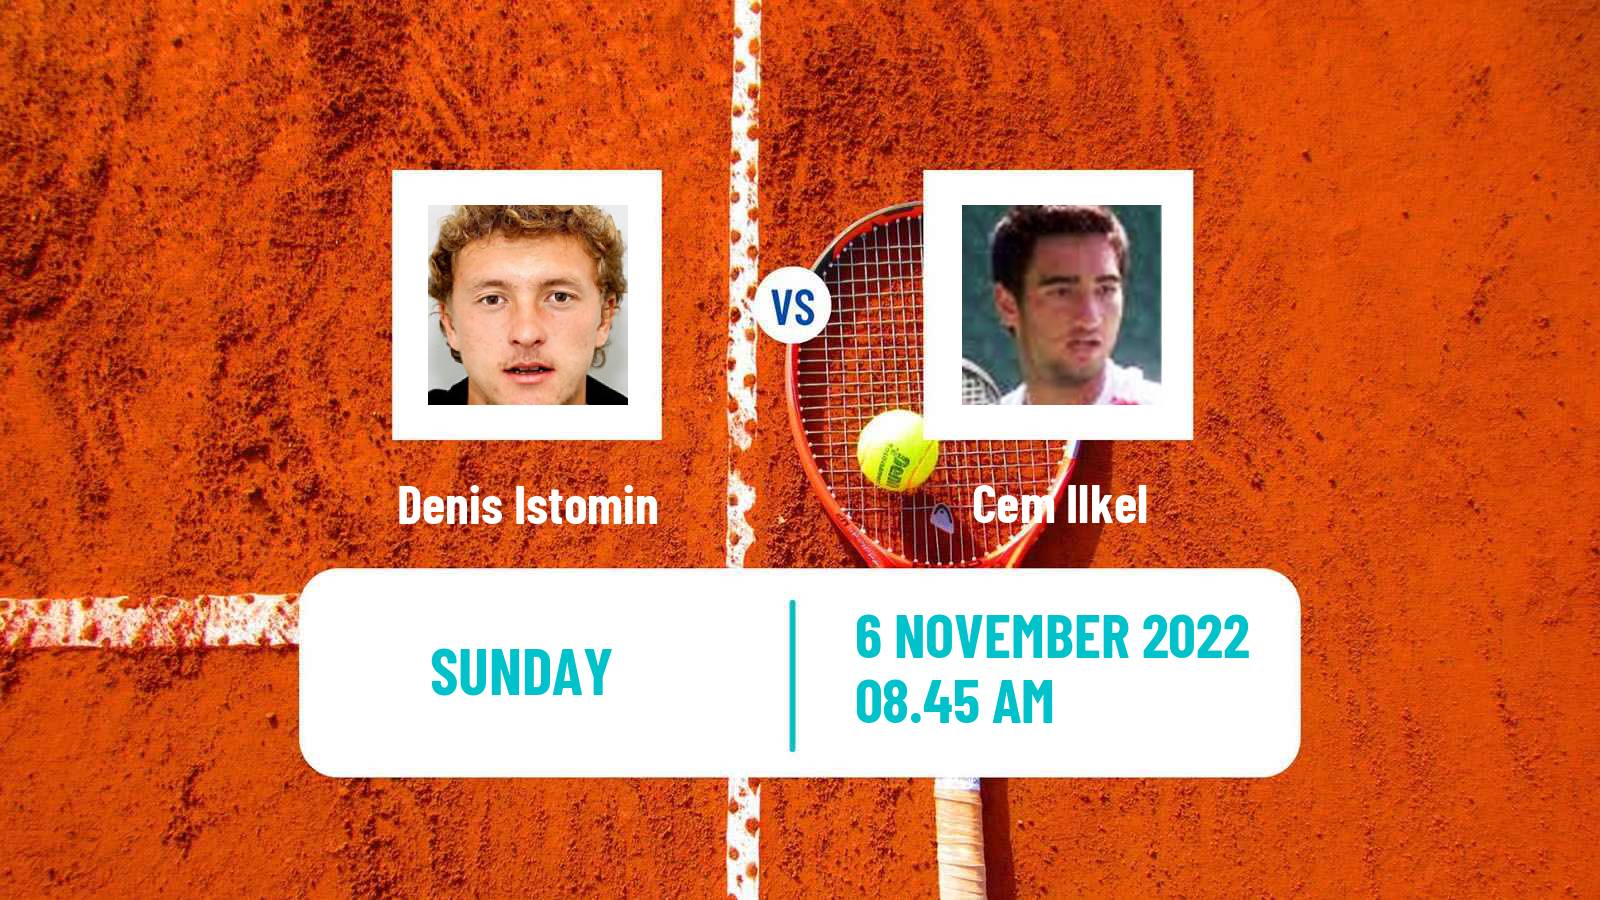 Tennis ATP Challenger Denis Istomin - Cem Ilkel